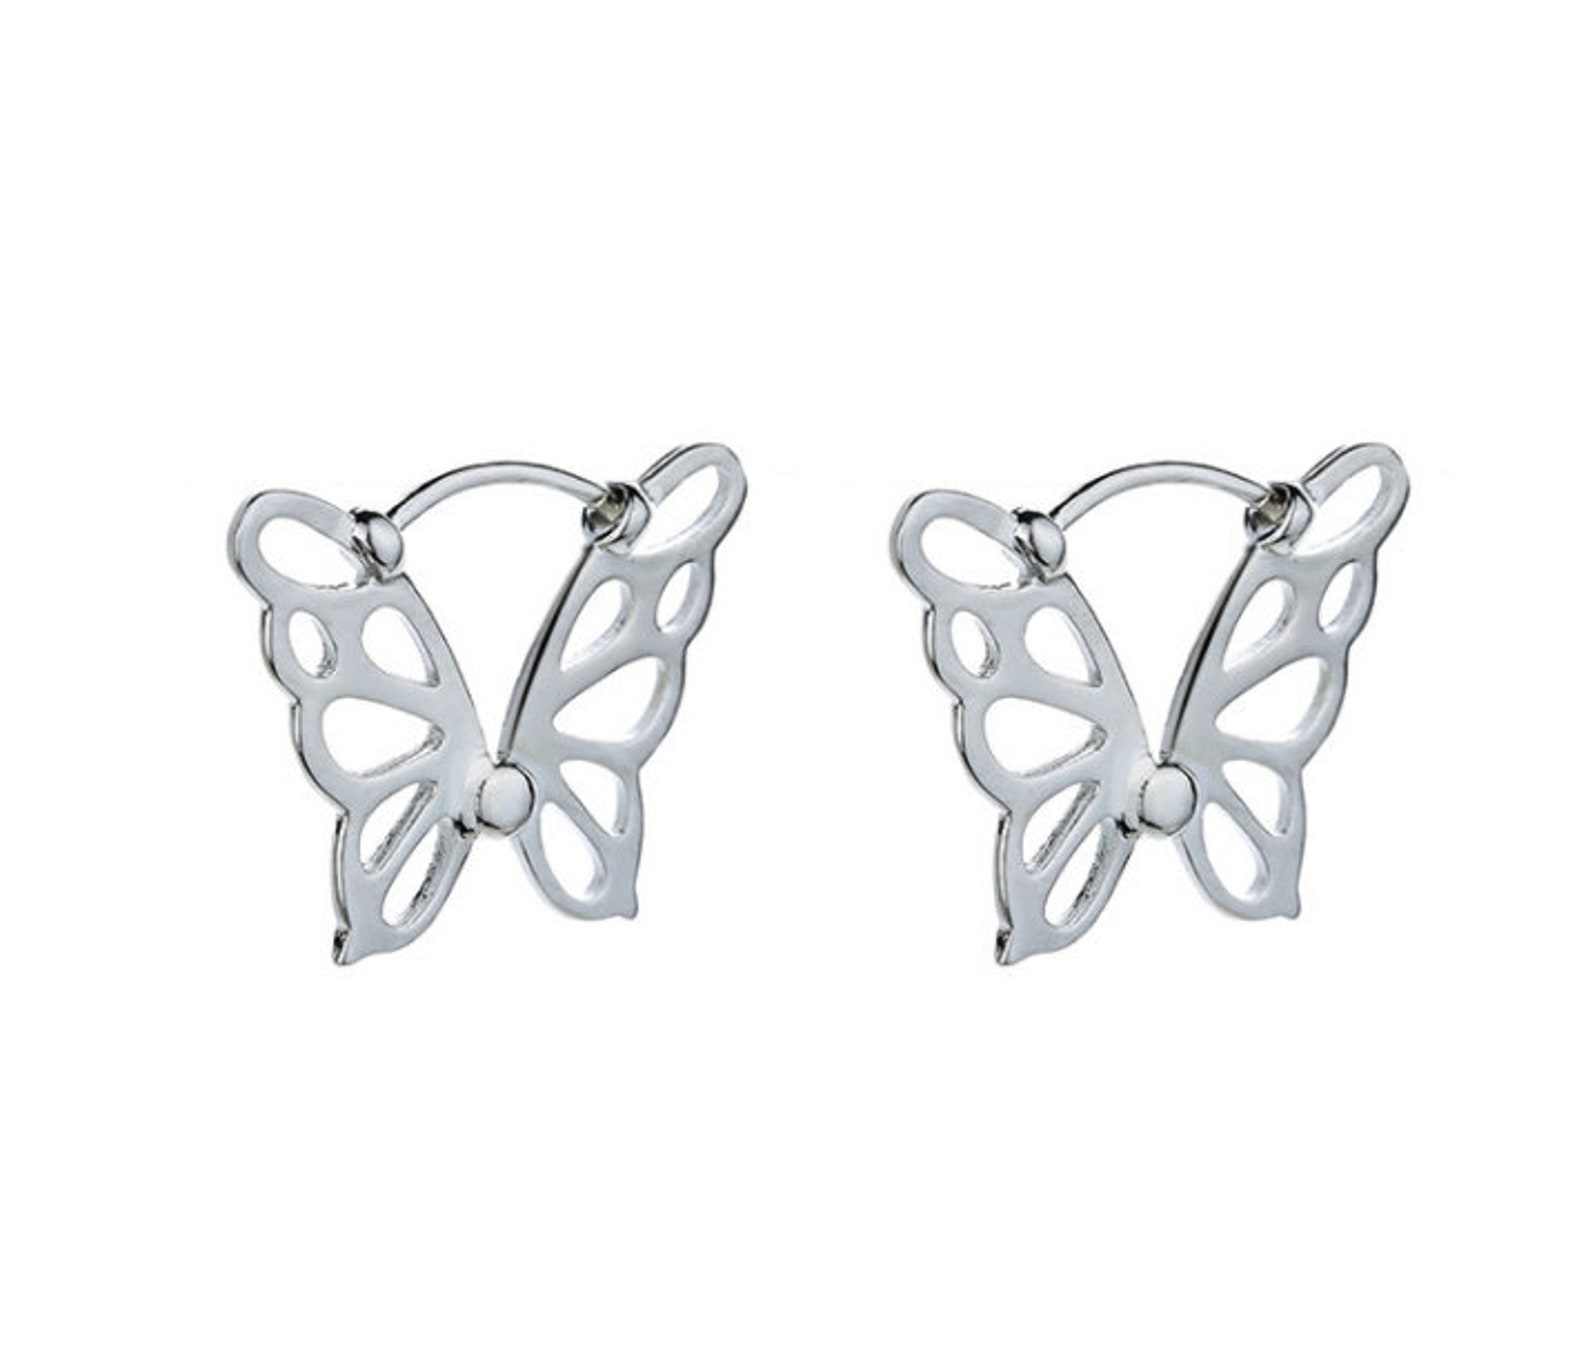 Silver 16mm butterfly hoop earring endless hoops huggies | Etsy